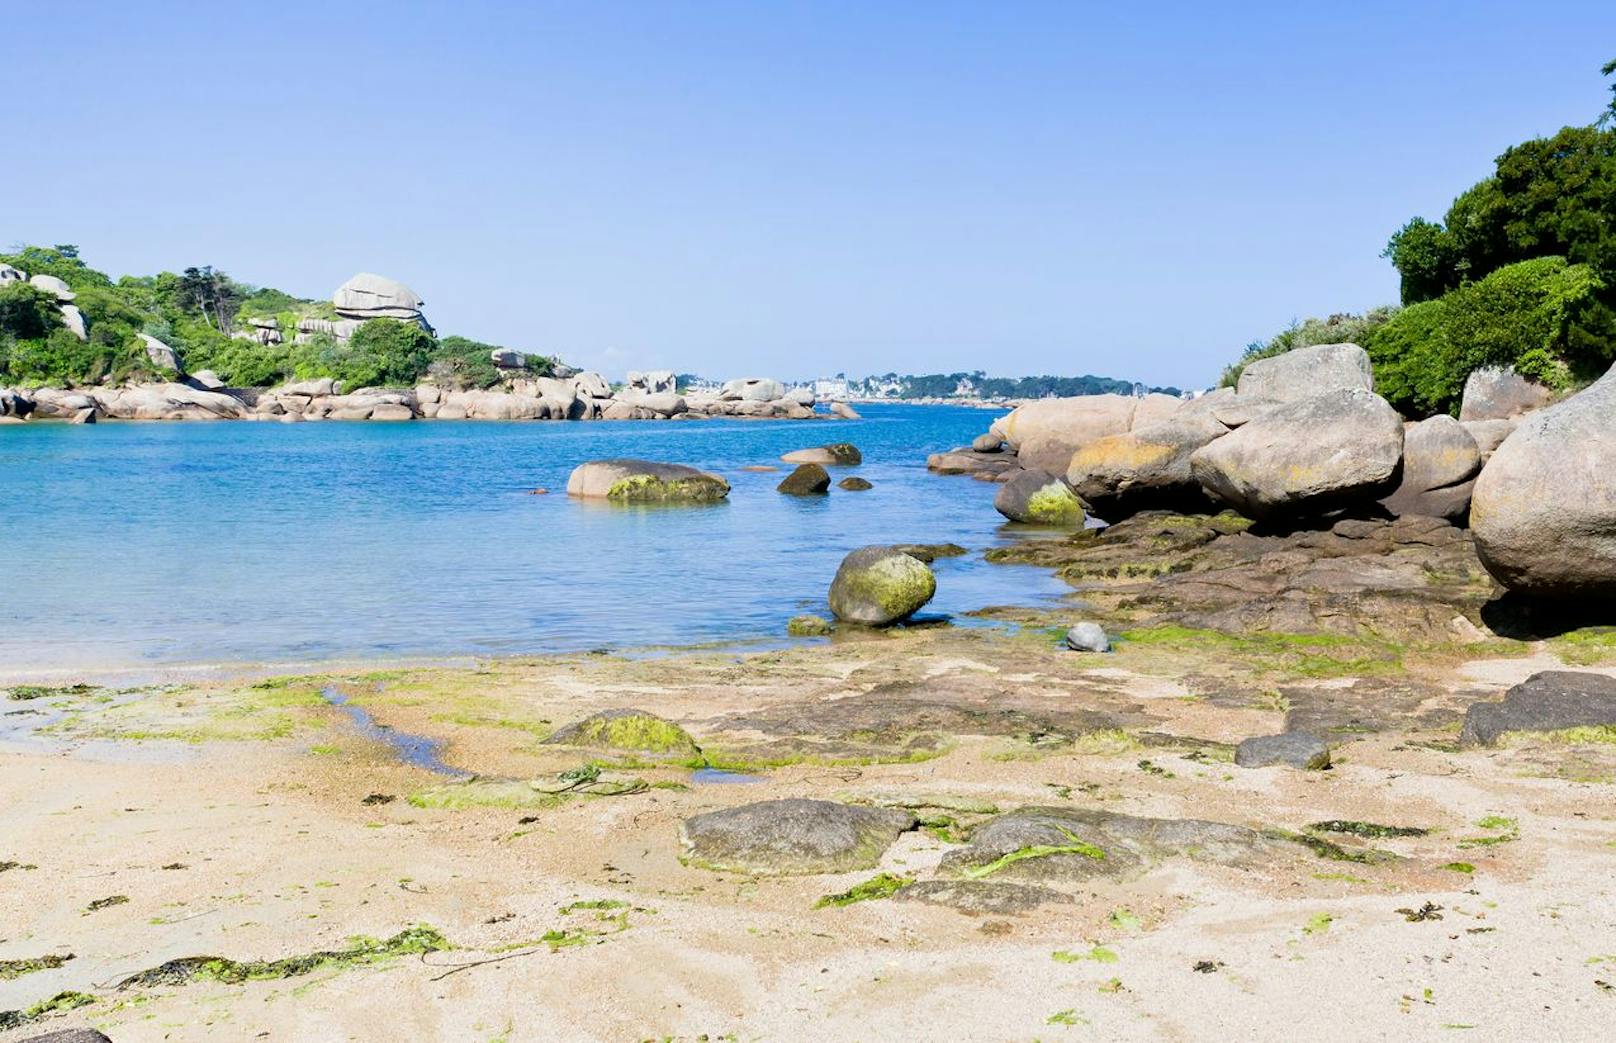 Maximal 4.700 Personen dürfen die Insel Île de Bréhat wochentags besuchen. Am Wochenende gilt diese Beschränkung nicht.